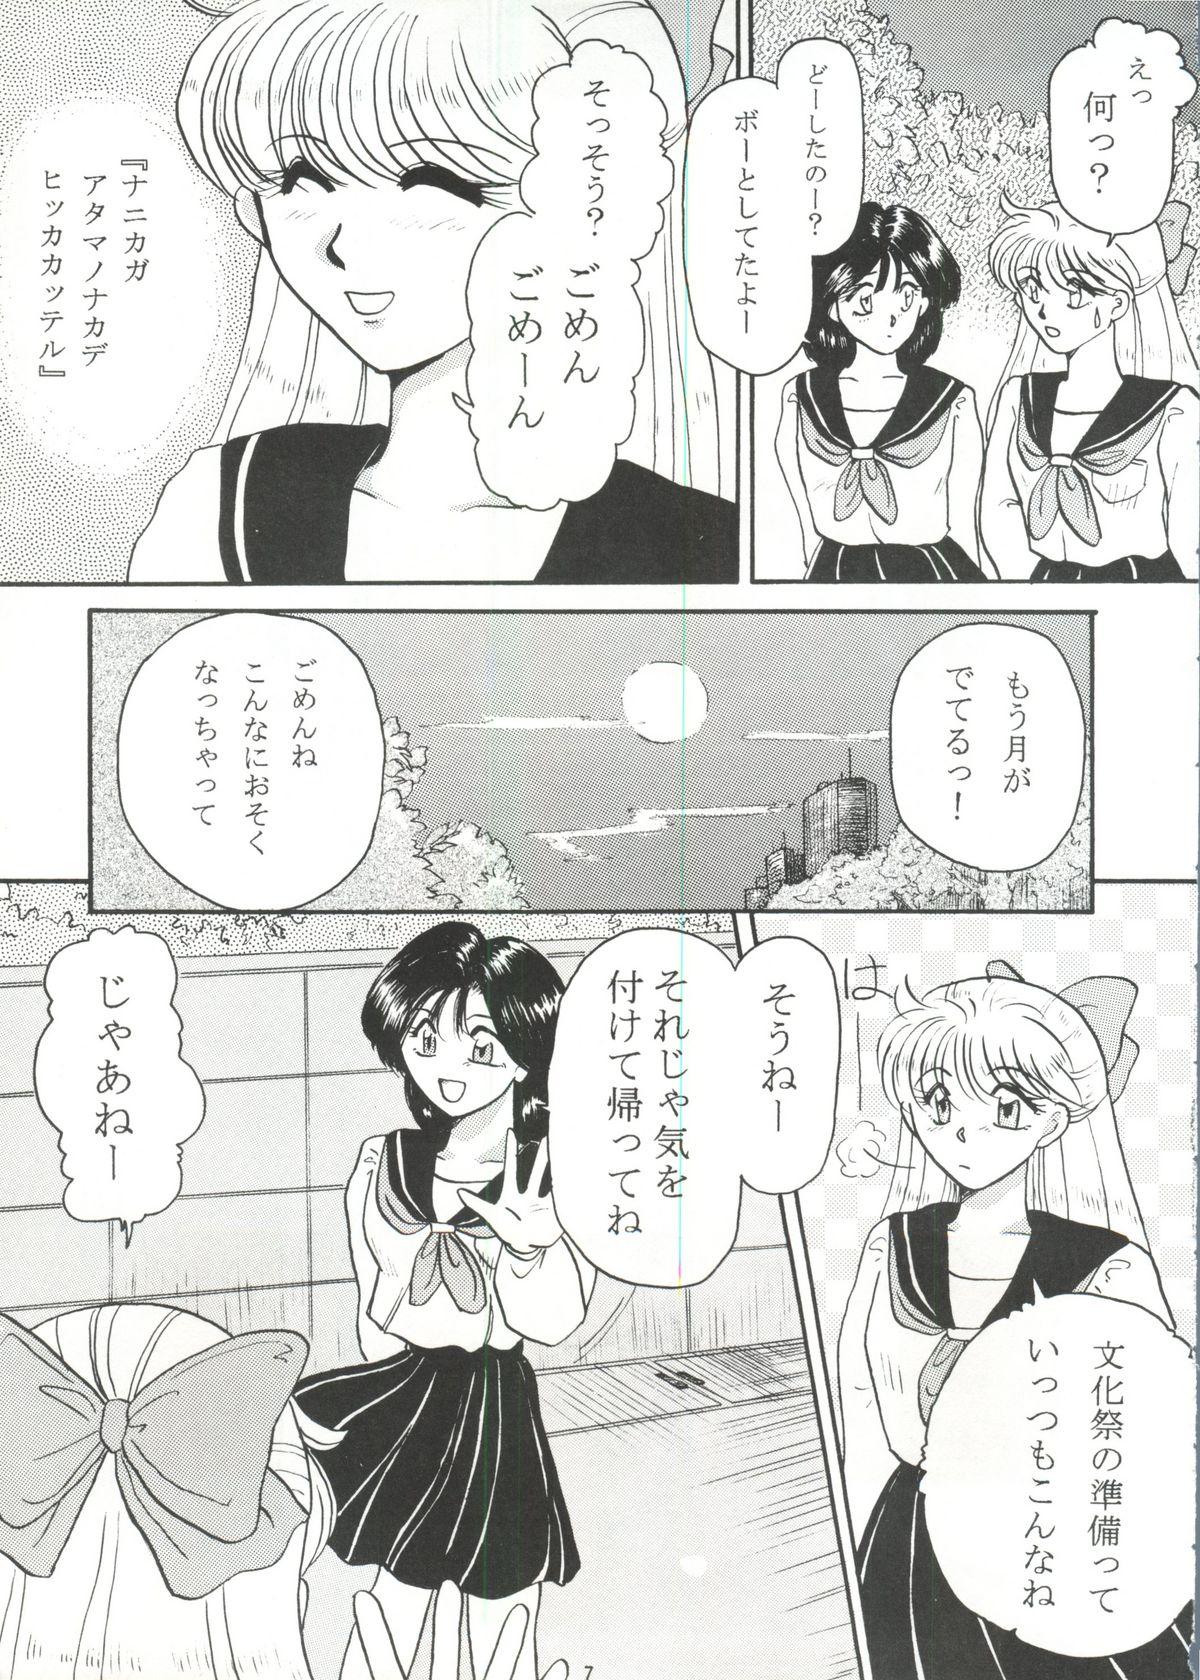 Rola Grandia - Sailor moon Gemidos - Page 6